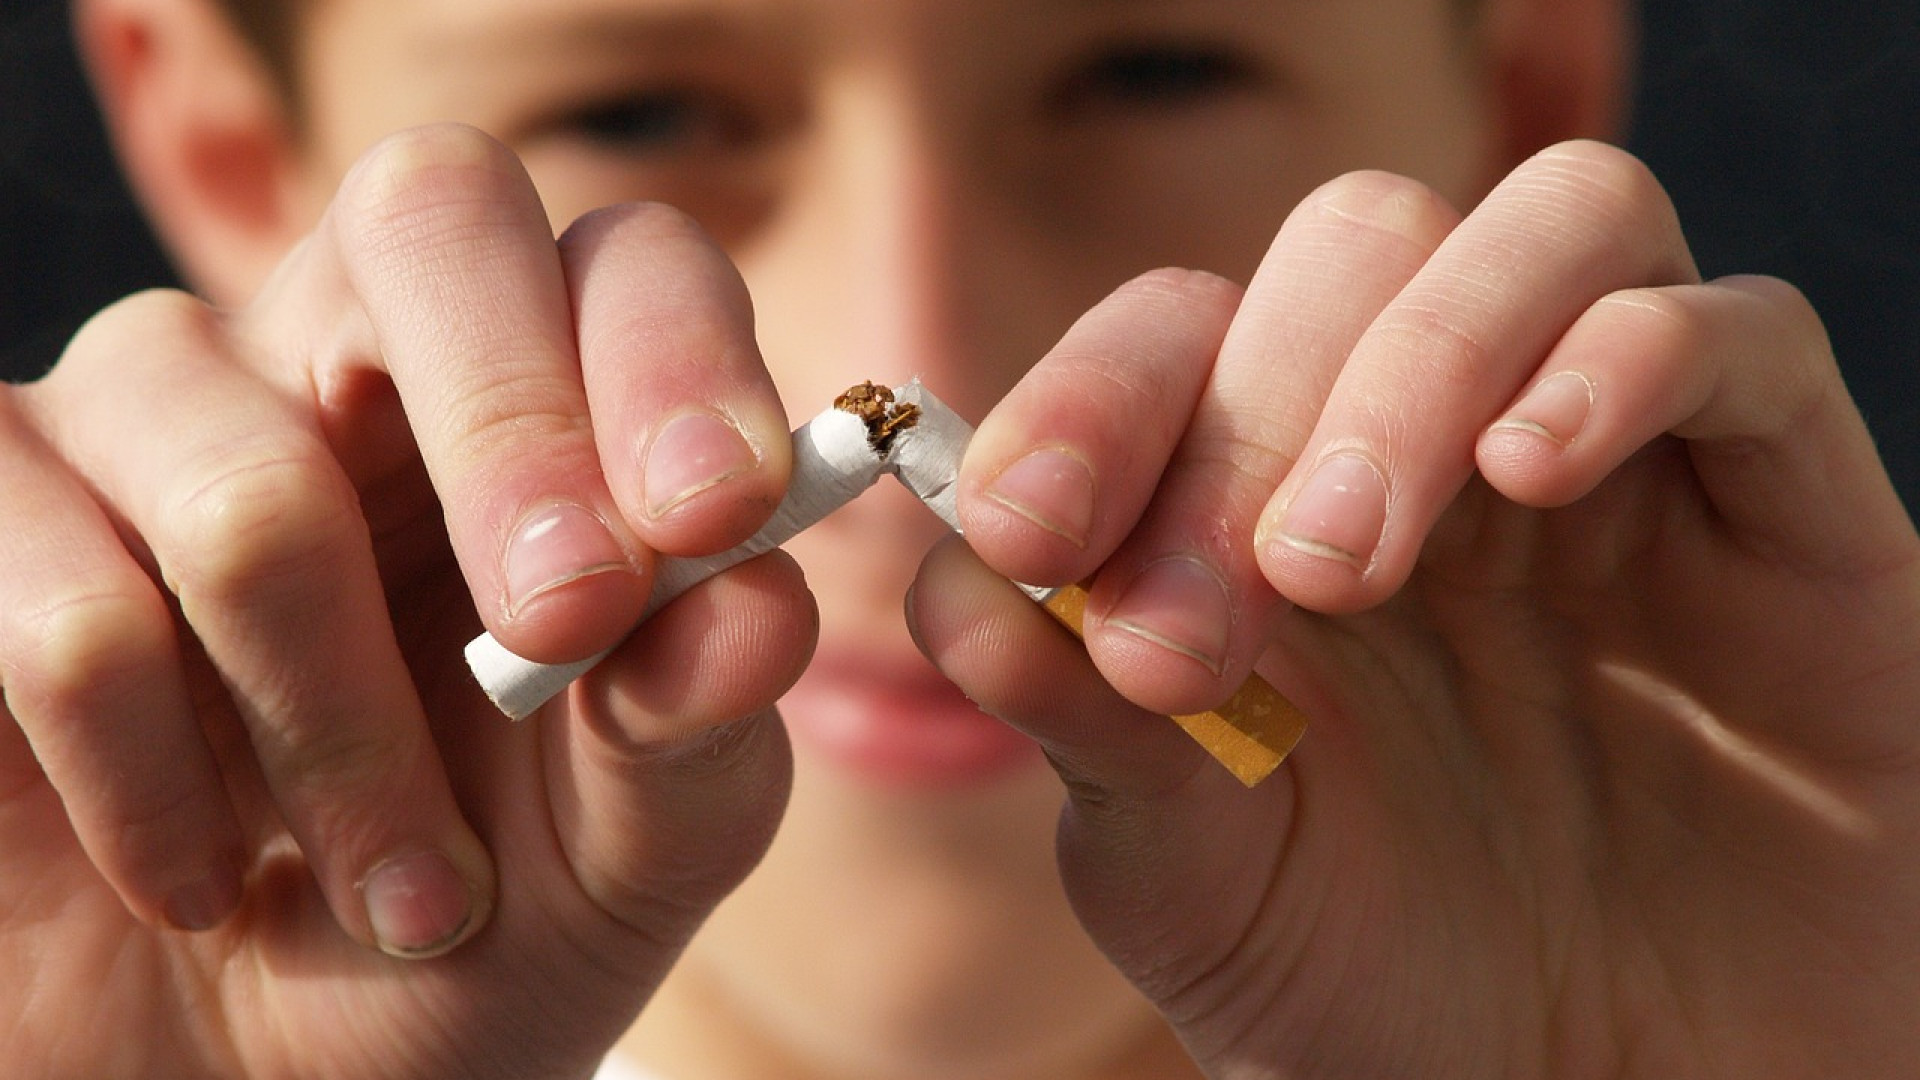 Comment faire un sevrage tabagique efficacement ?